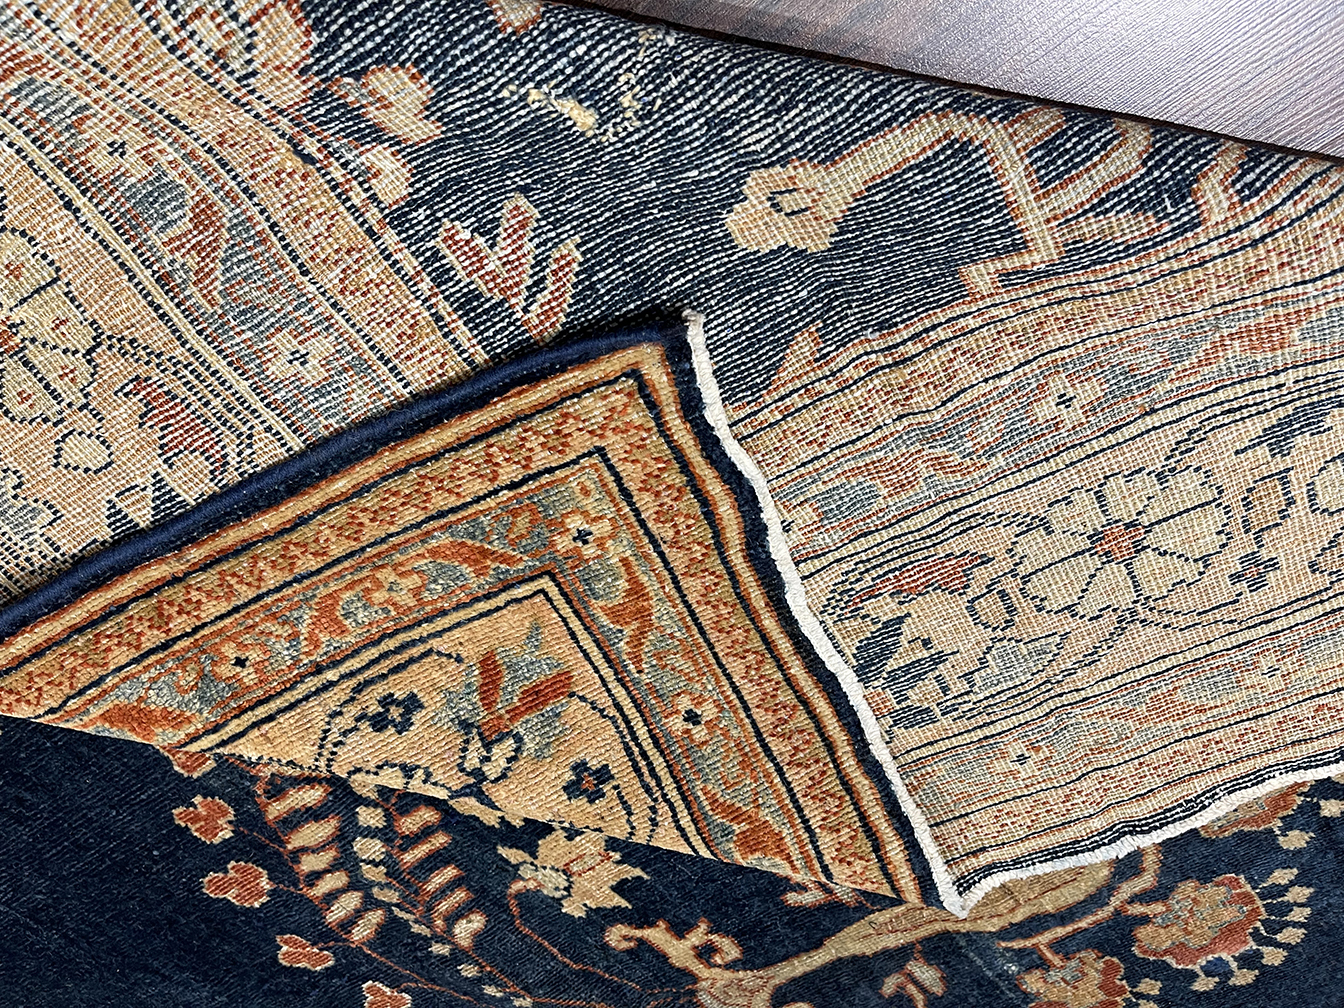 Antique mahal Carpet - # 56324